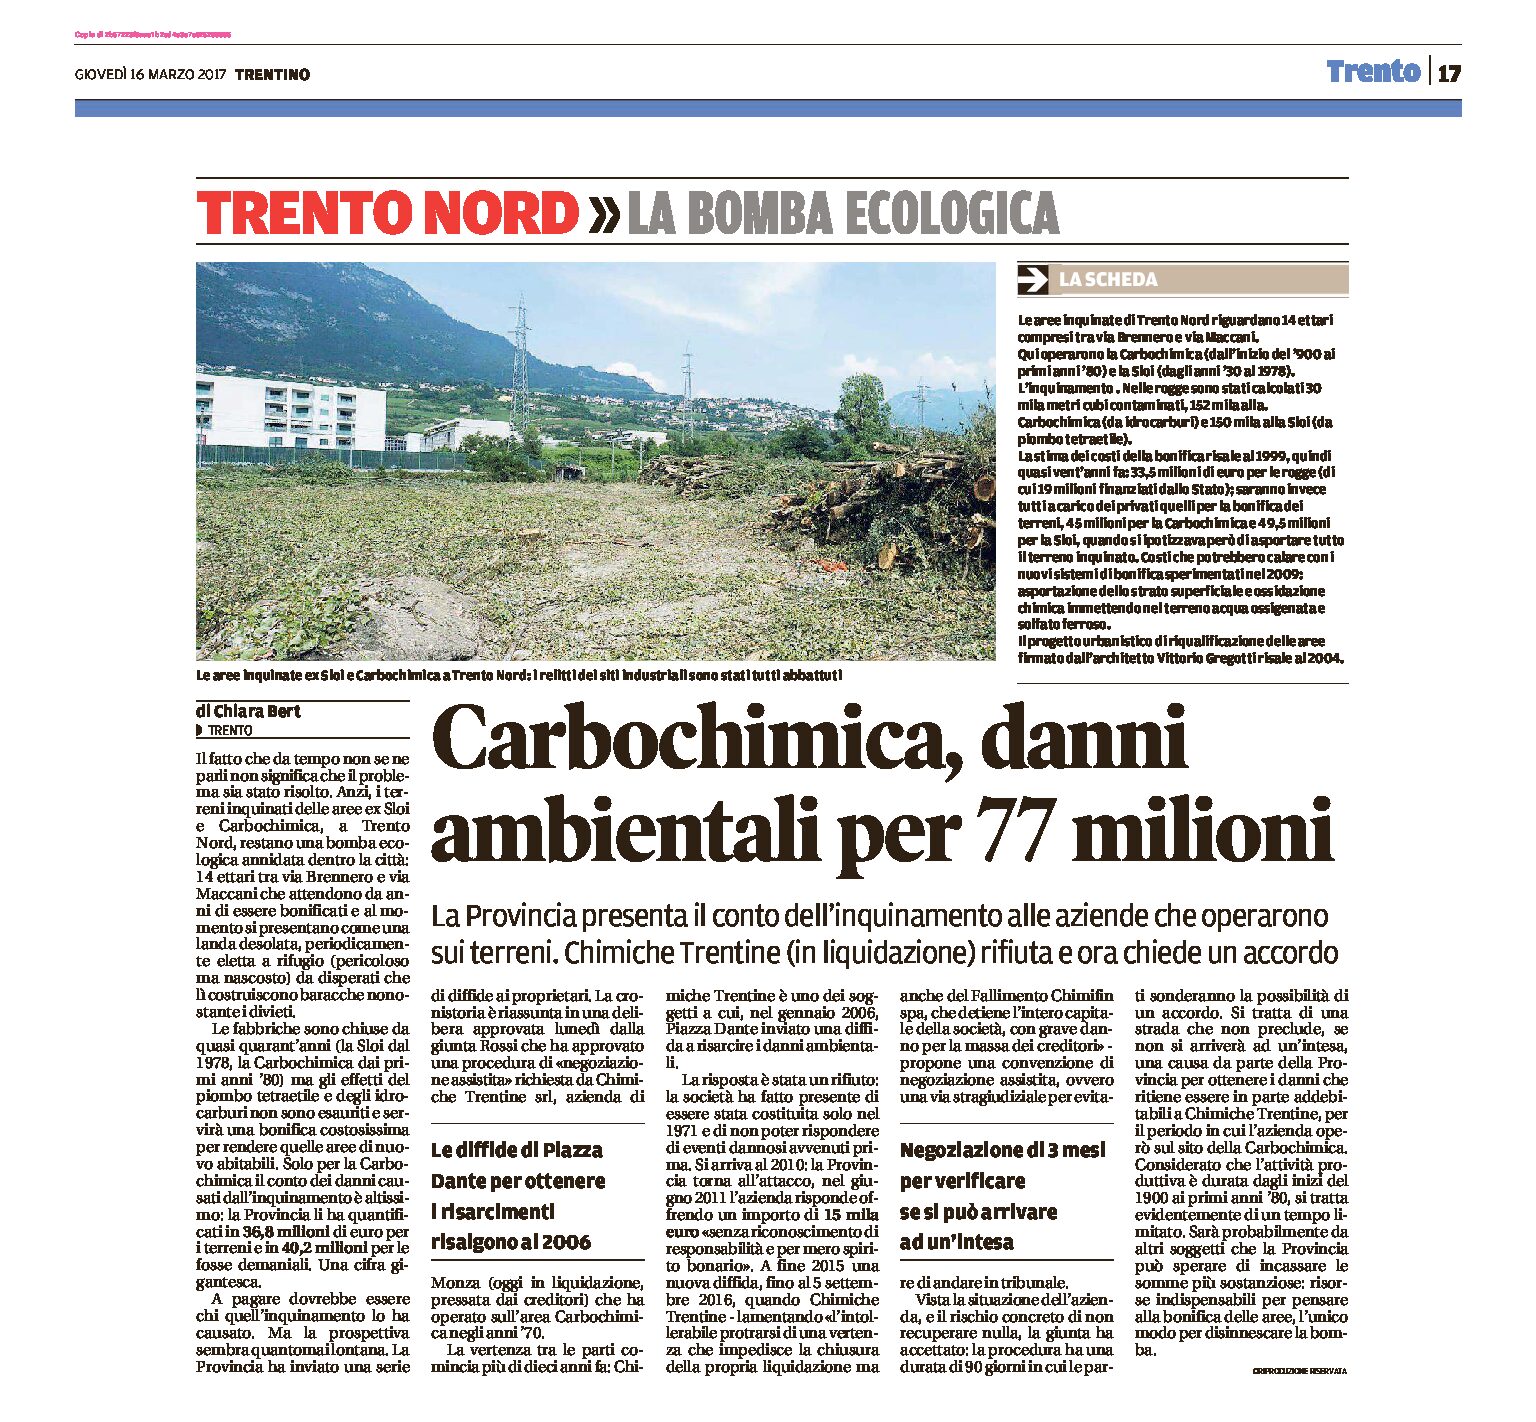 Trento Nord: Carbochimica, danni ambientali per 77 milioni